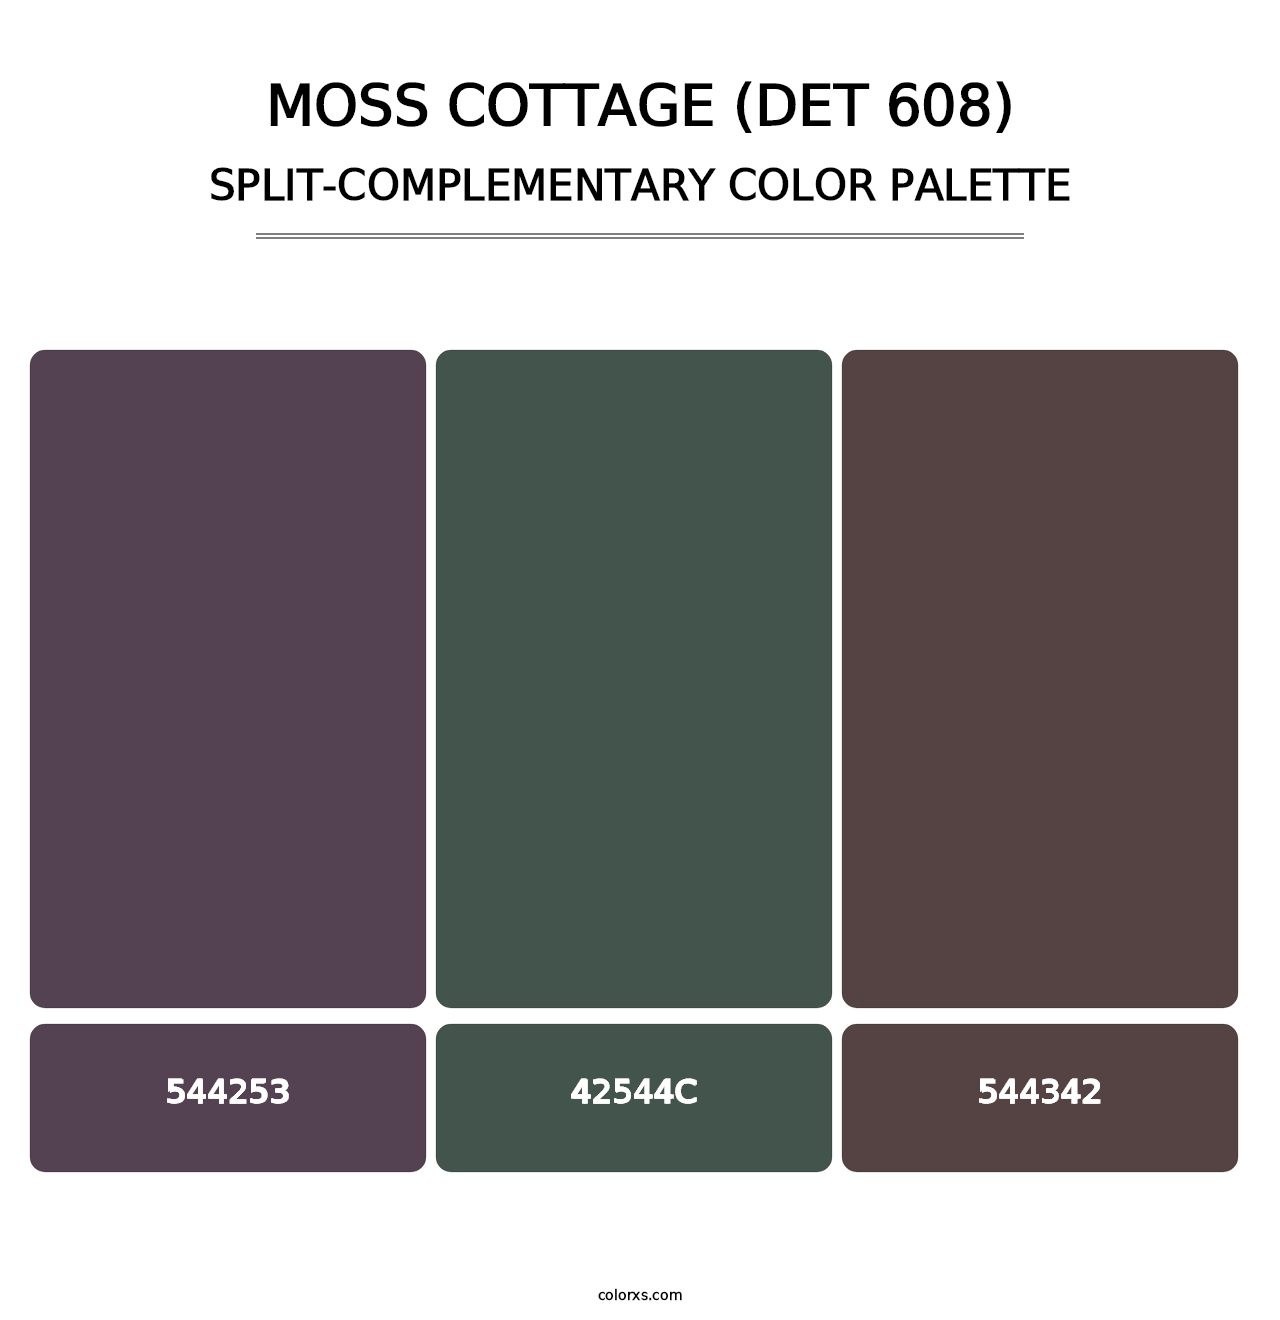 Moss Cottage (DET 608) - Split-Complementary Color Palette